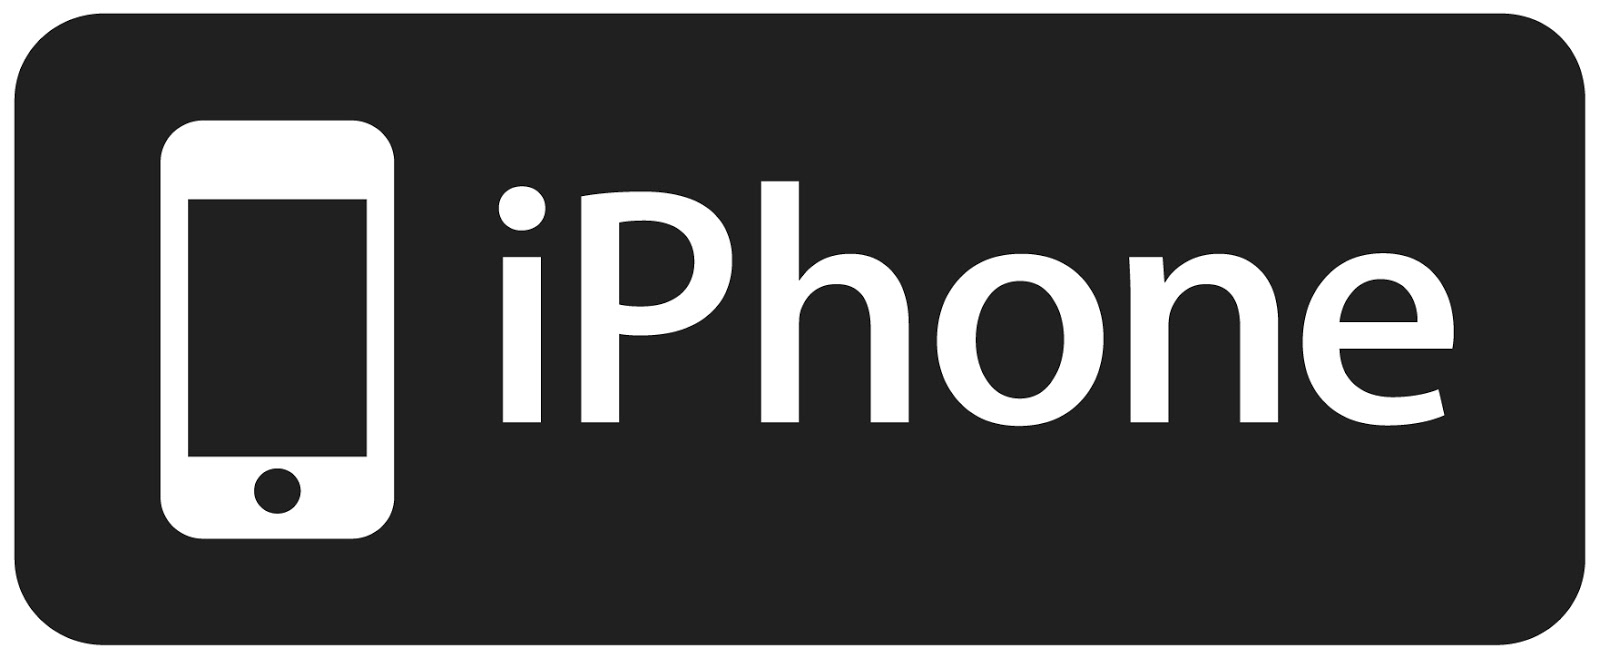 Apple, iPhone üretimini ABD`de yapacağını bildirdi - Teknoloji - Asimetrik Haber